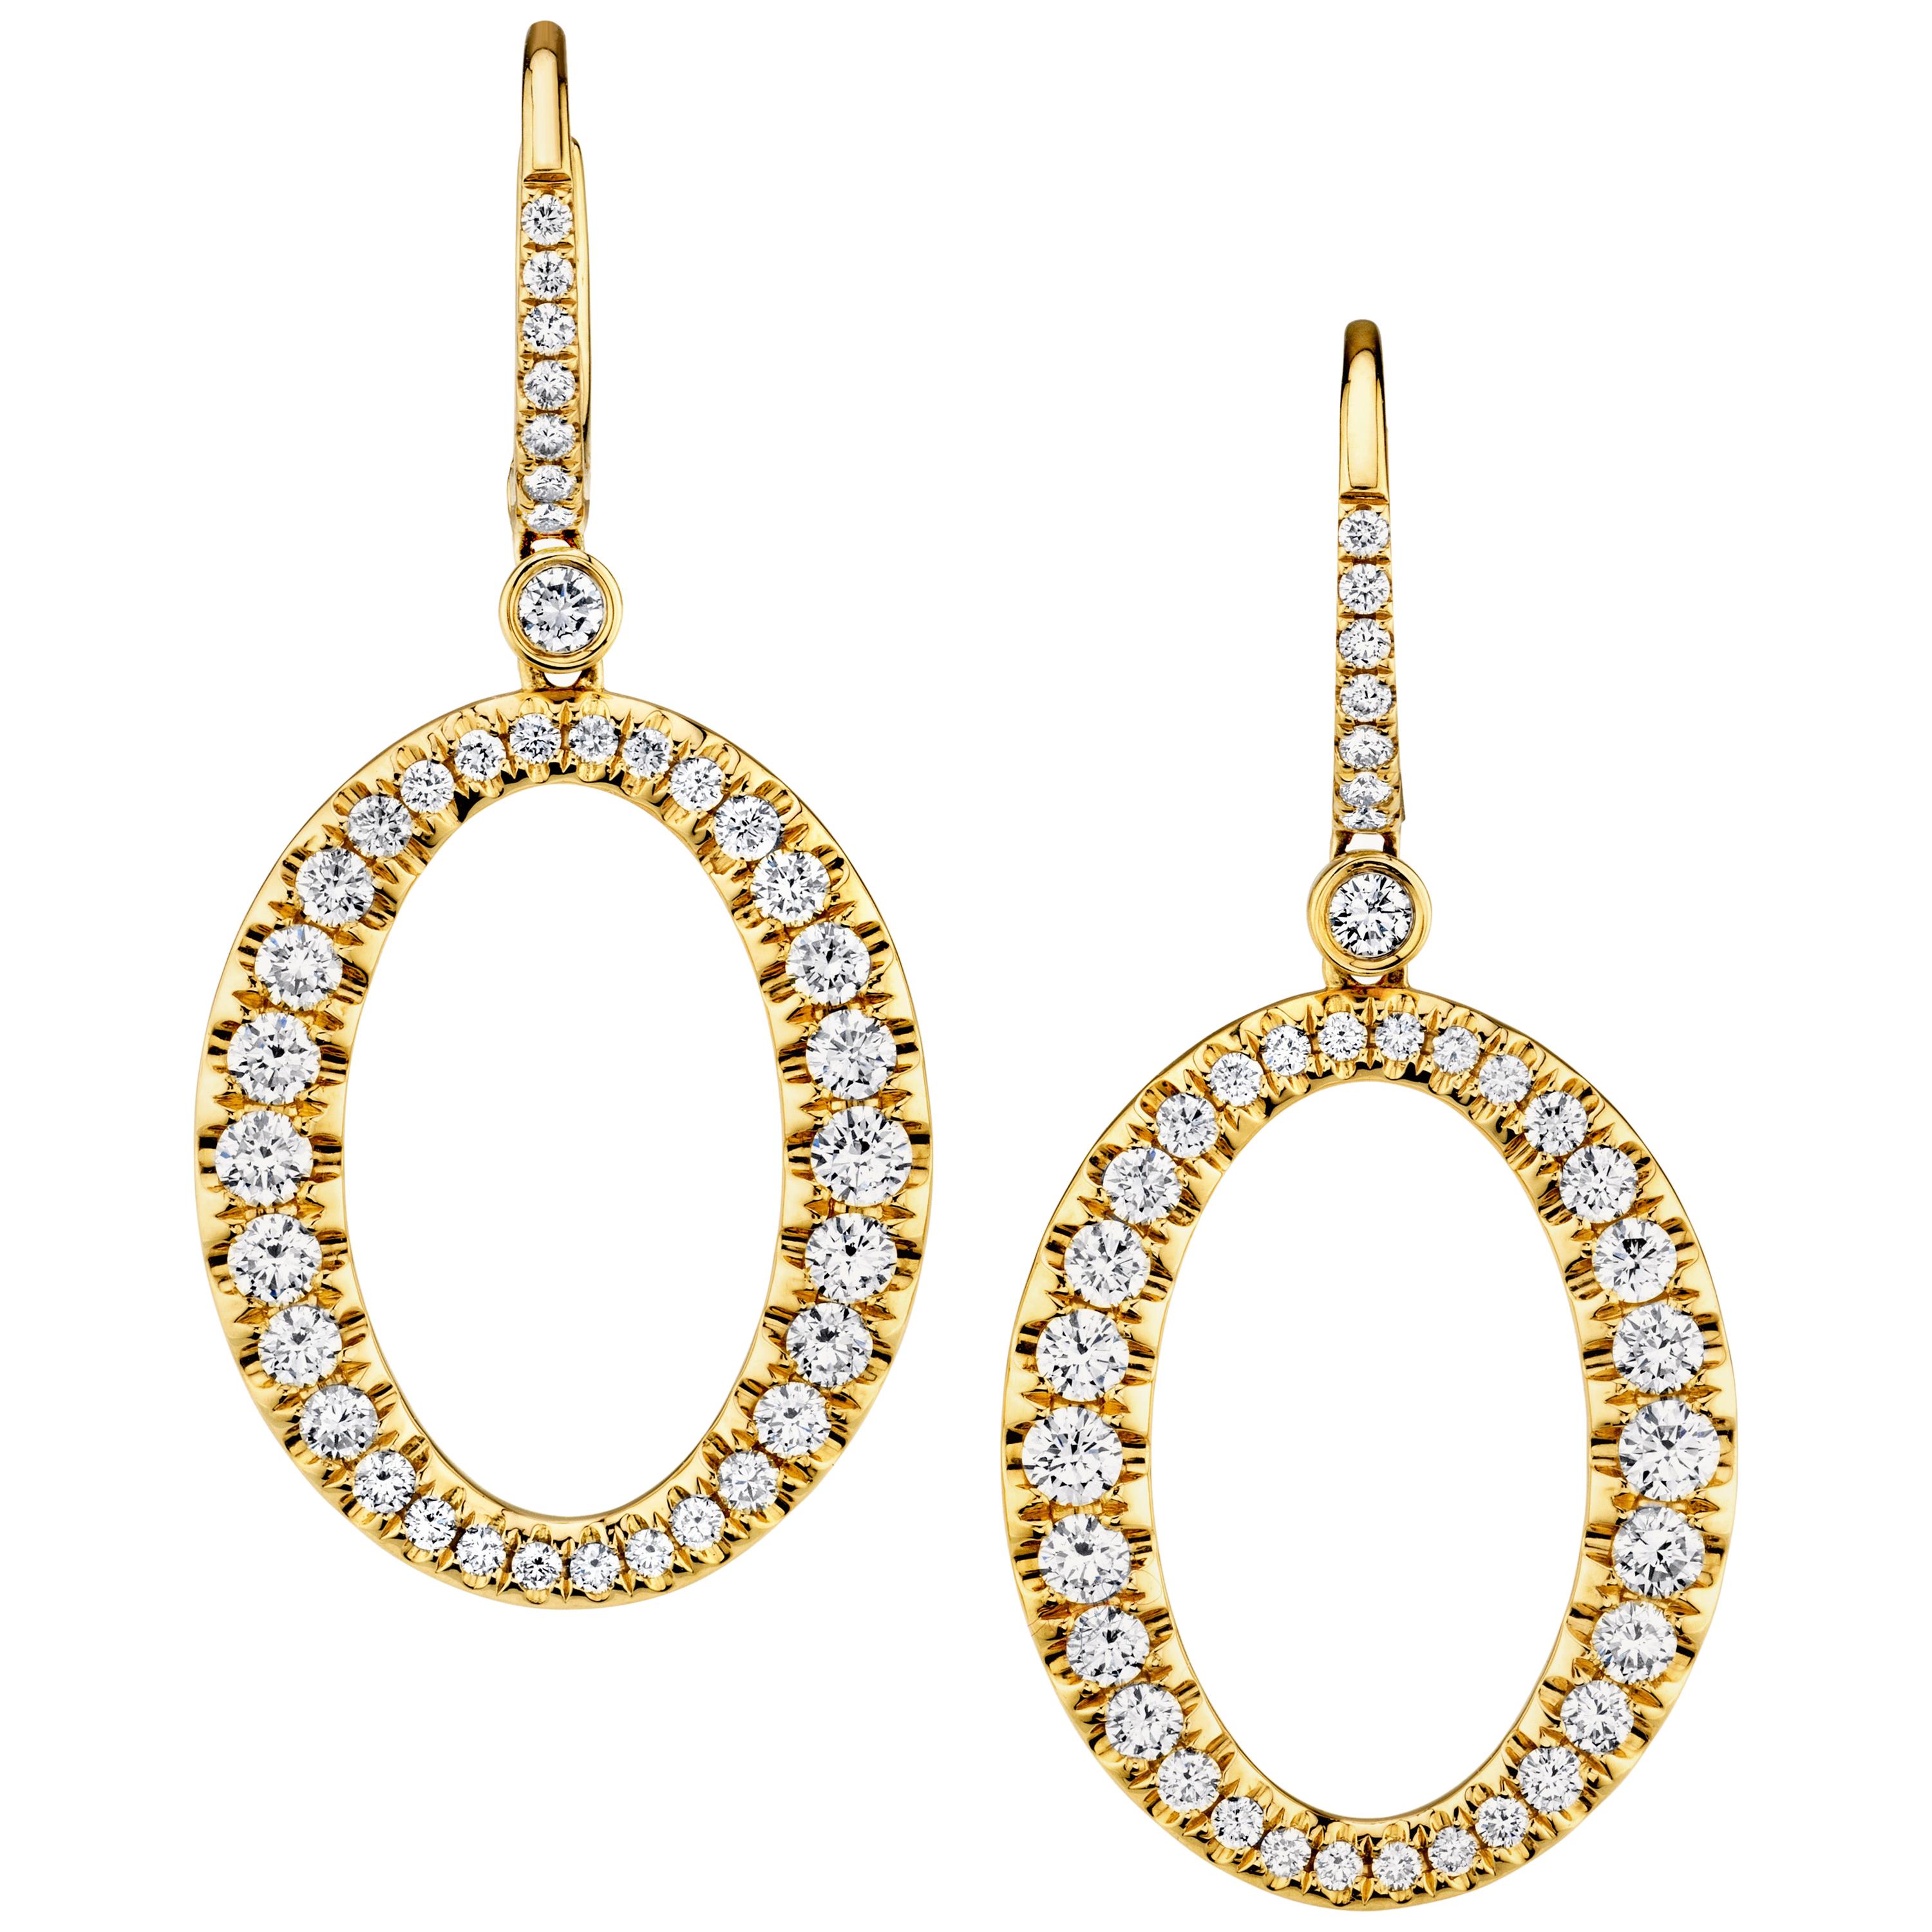 Diamond "O" Dangle Earrings in Yellow Gold, 2.06 Carats Total